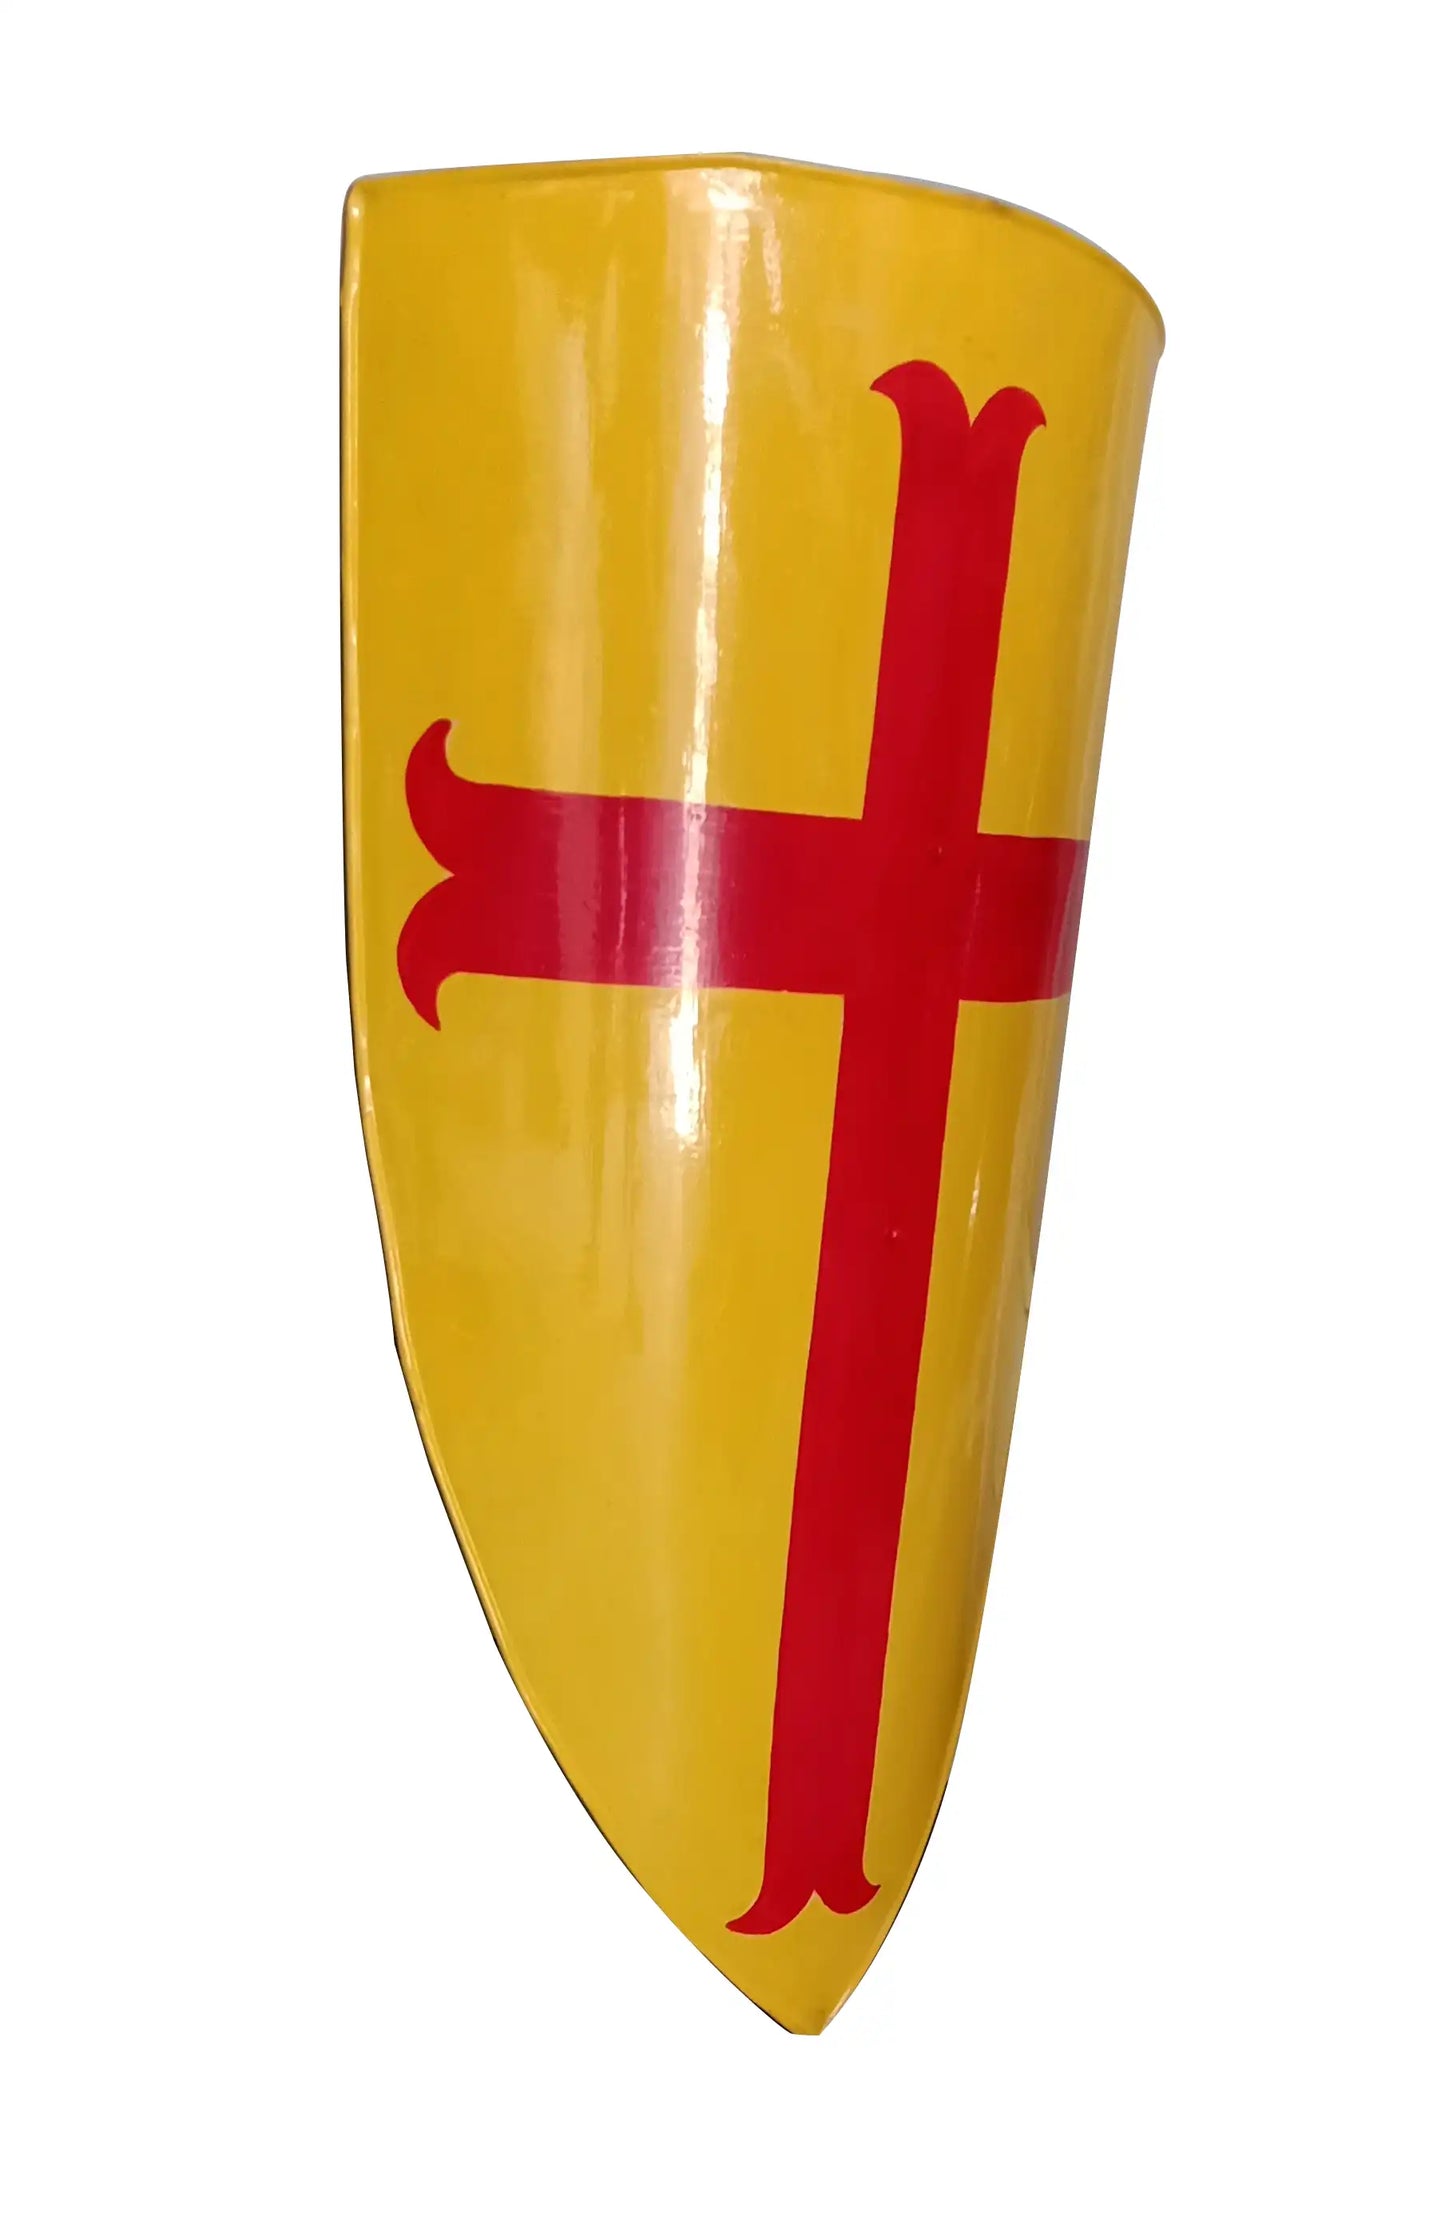 Mittelalterliches Rotes Kreuz Kreuzritter Gelbes Tempelritterschild 